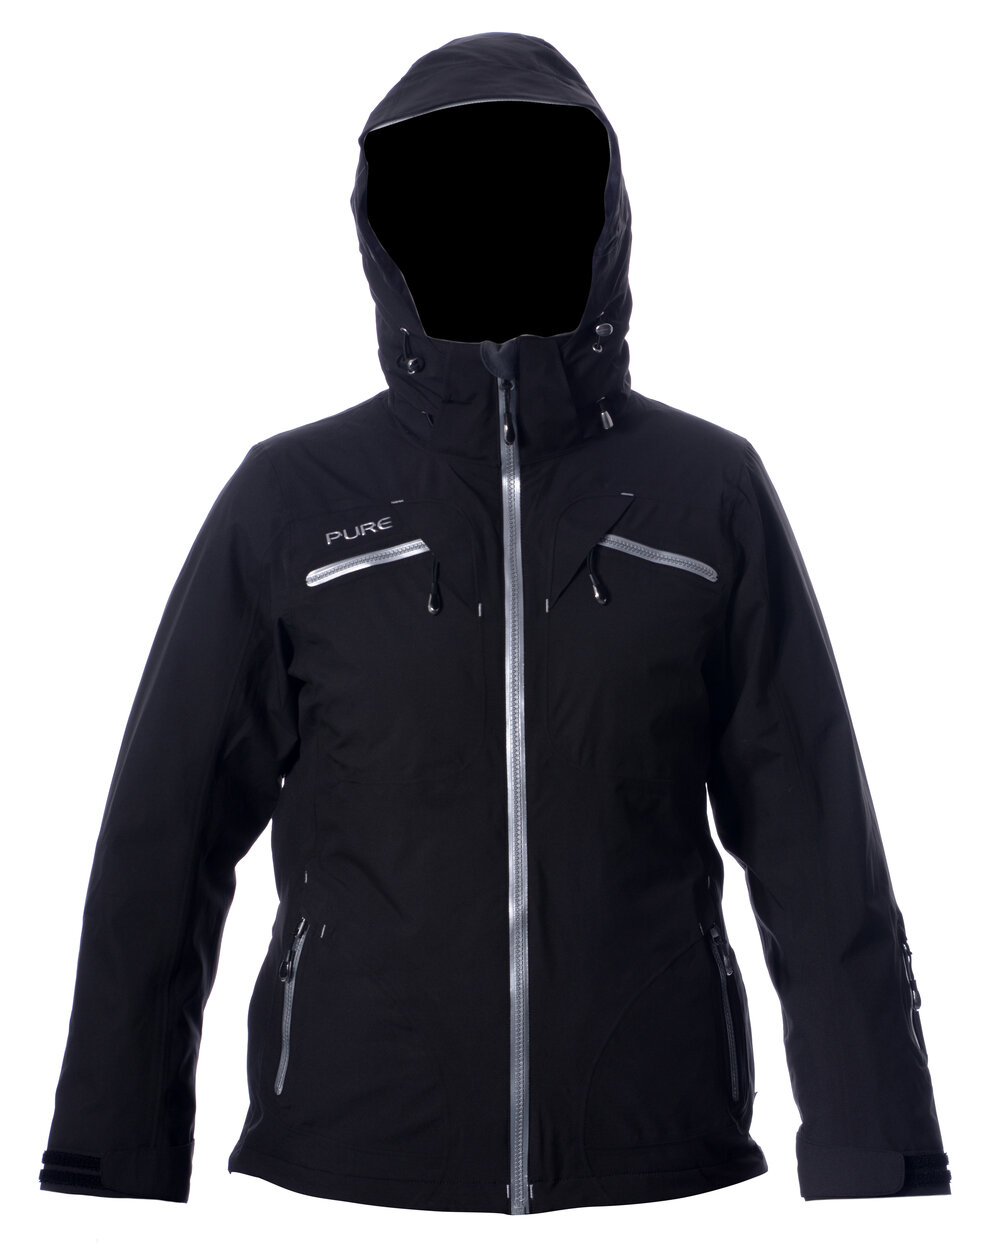 CLEARANCE Pure Mountain Matterhorn Women's Shell Jacket- Black